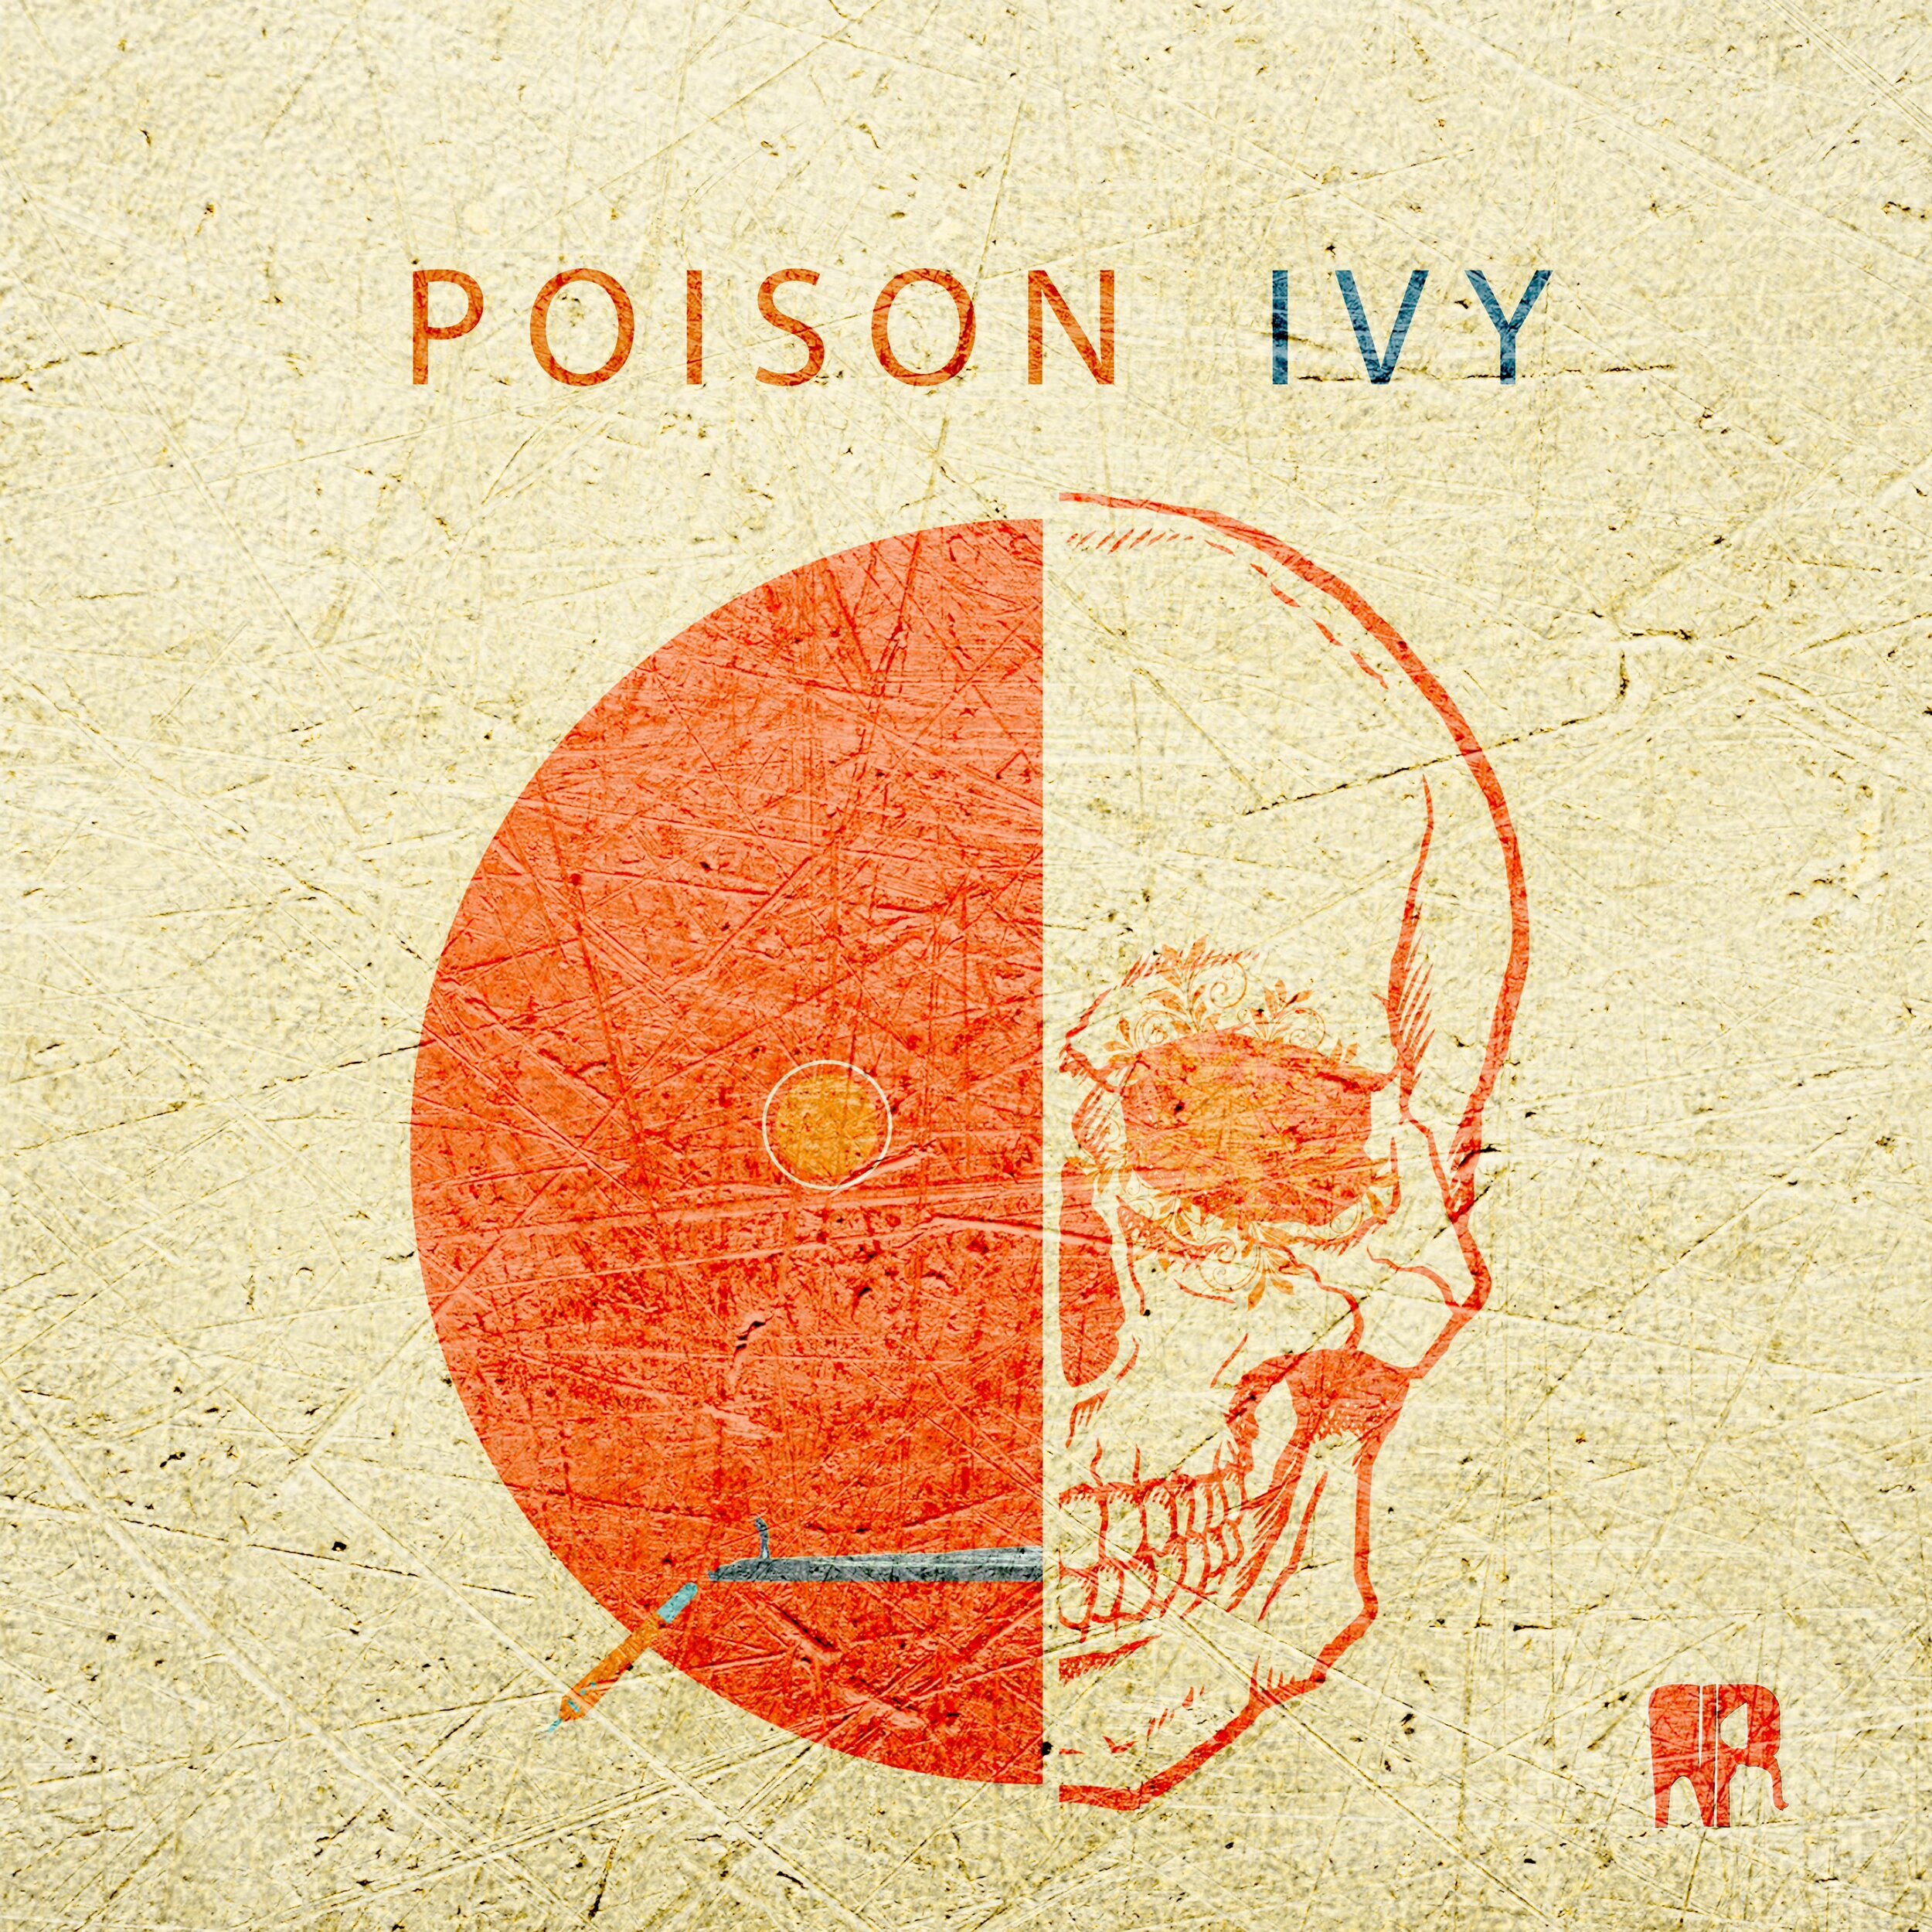 Nicolas Rage - "Poison Ivy"